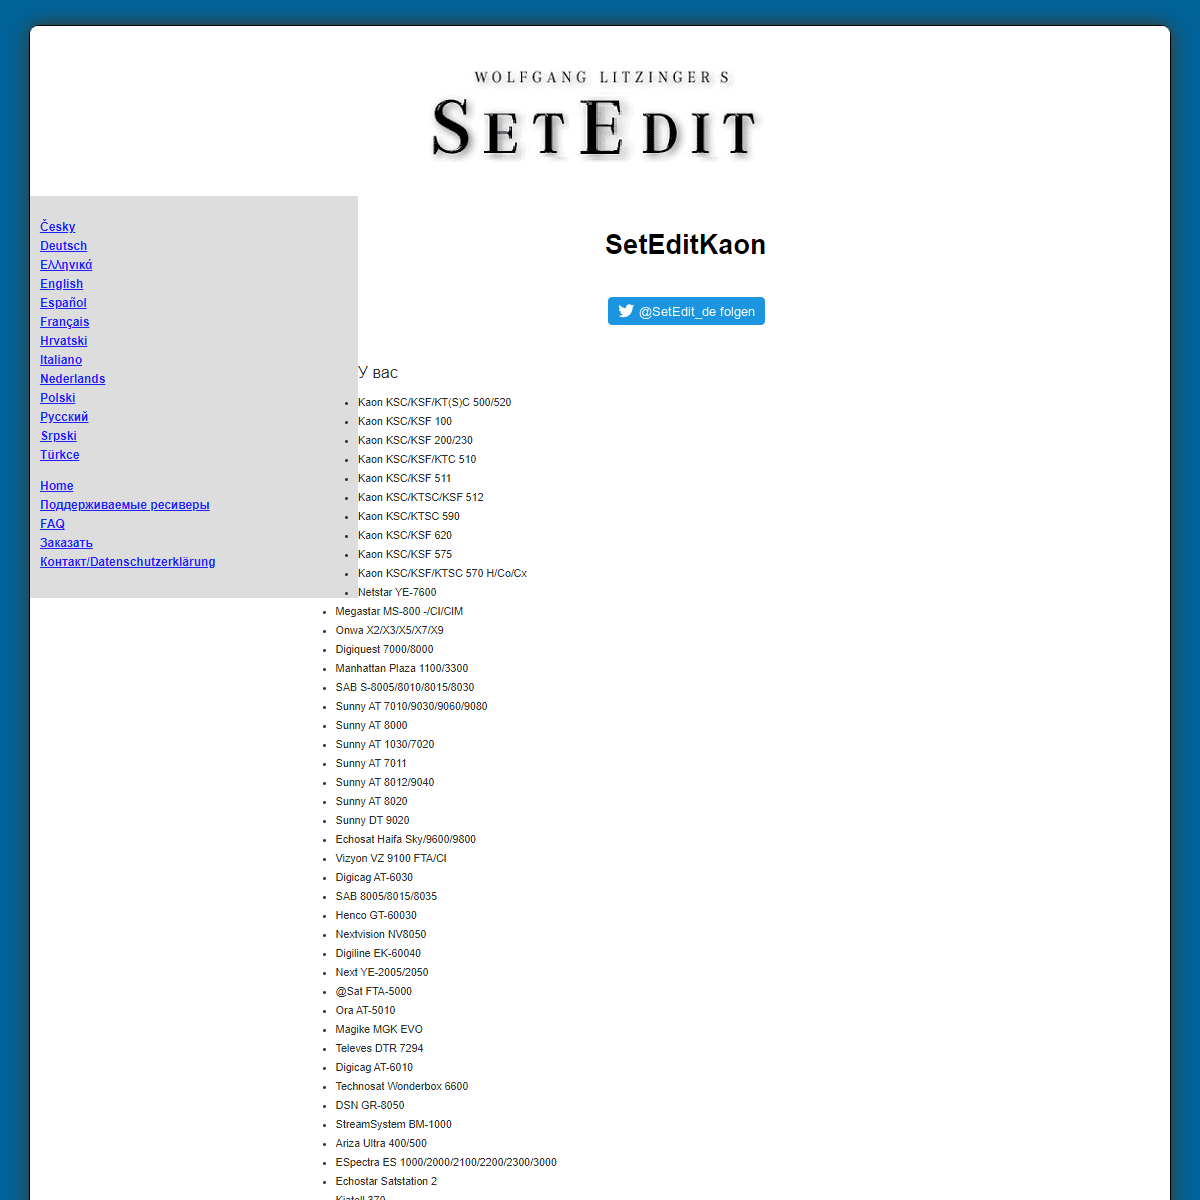 A complete backup of https://www.setedit.de/SetEdit.php?spr=9&Editor=18